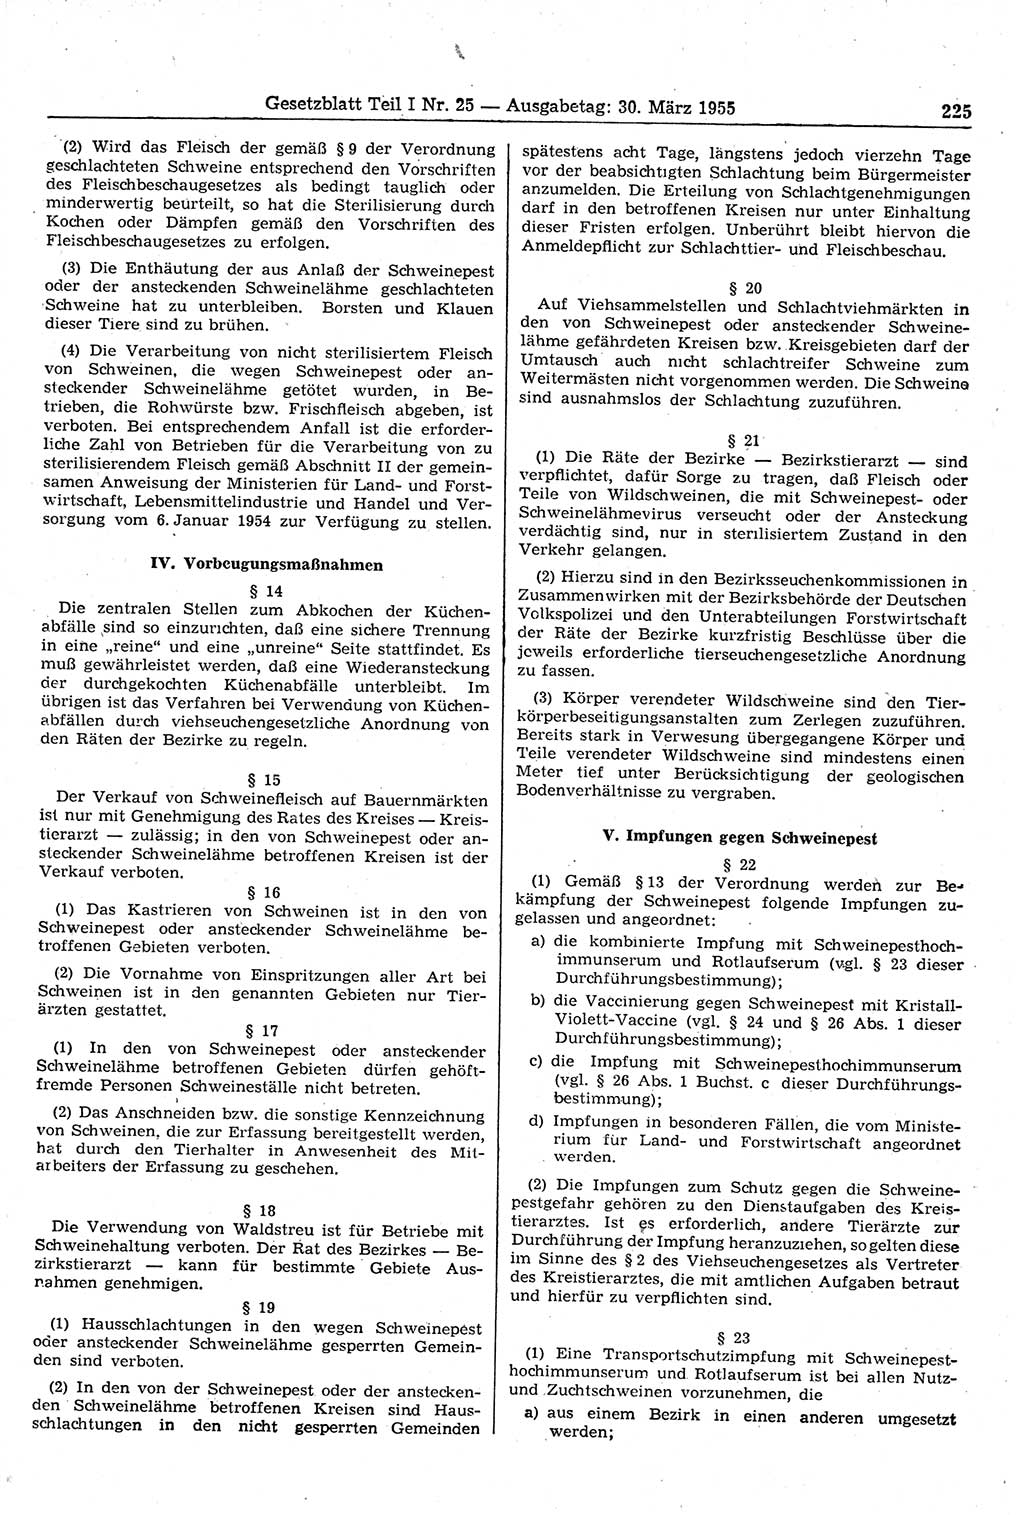 Gesetzblatt (GBl.) der Deutschen Demokratischen Republik (DDR) Teil Ⅰ 1955, Seite 225 (GBl. DDR Ⅰ 1955, S. 225)